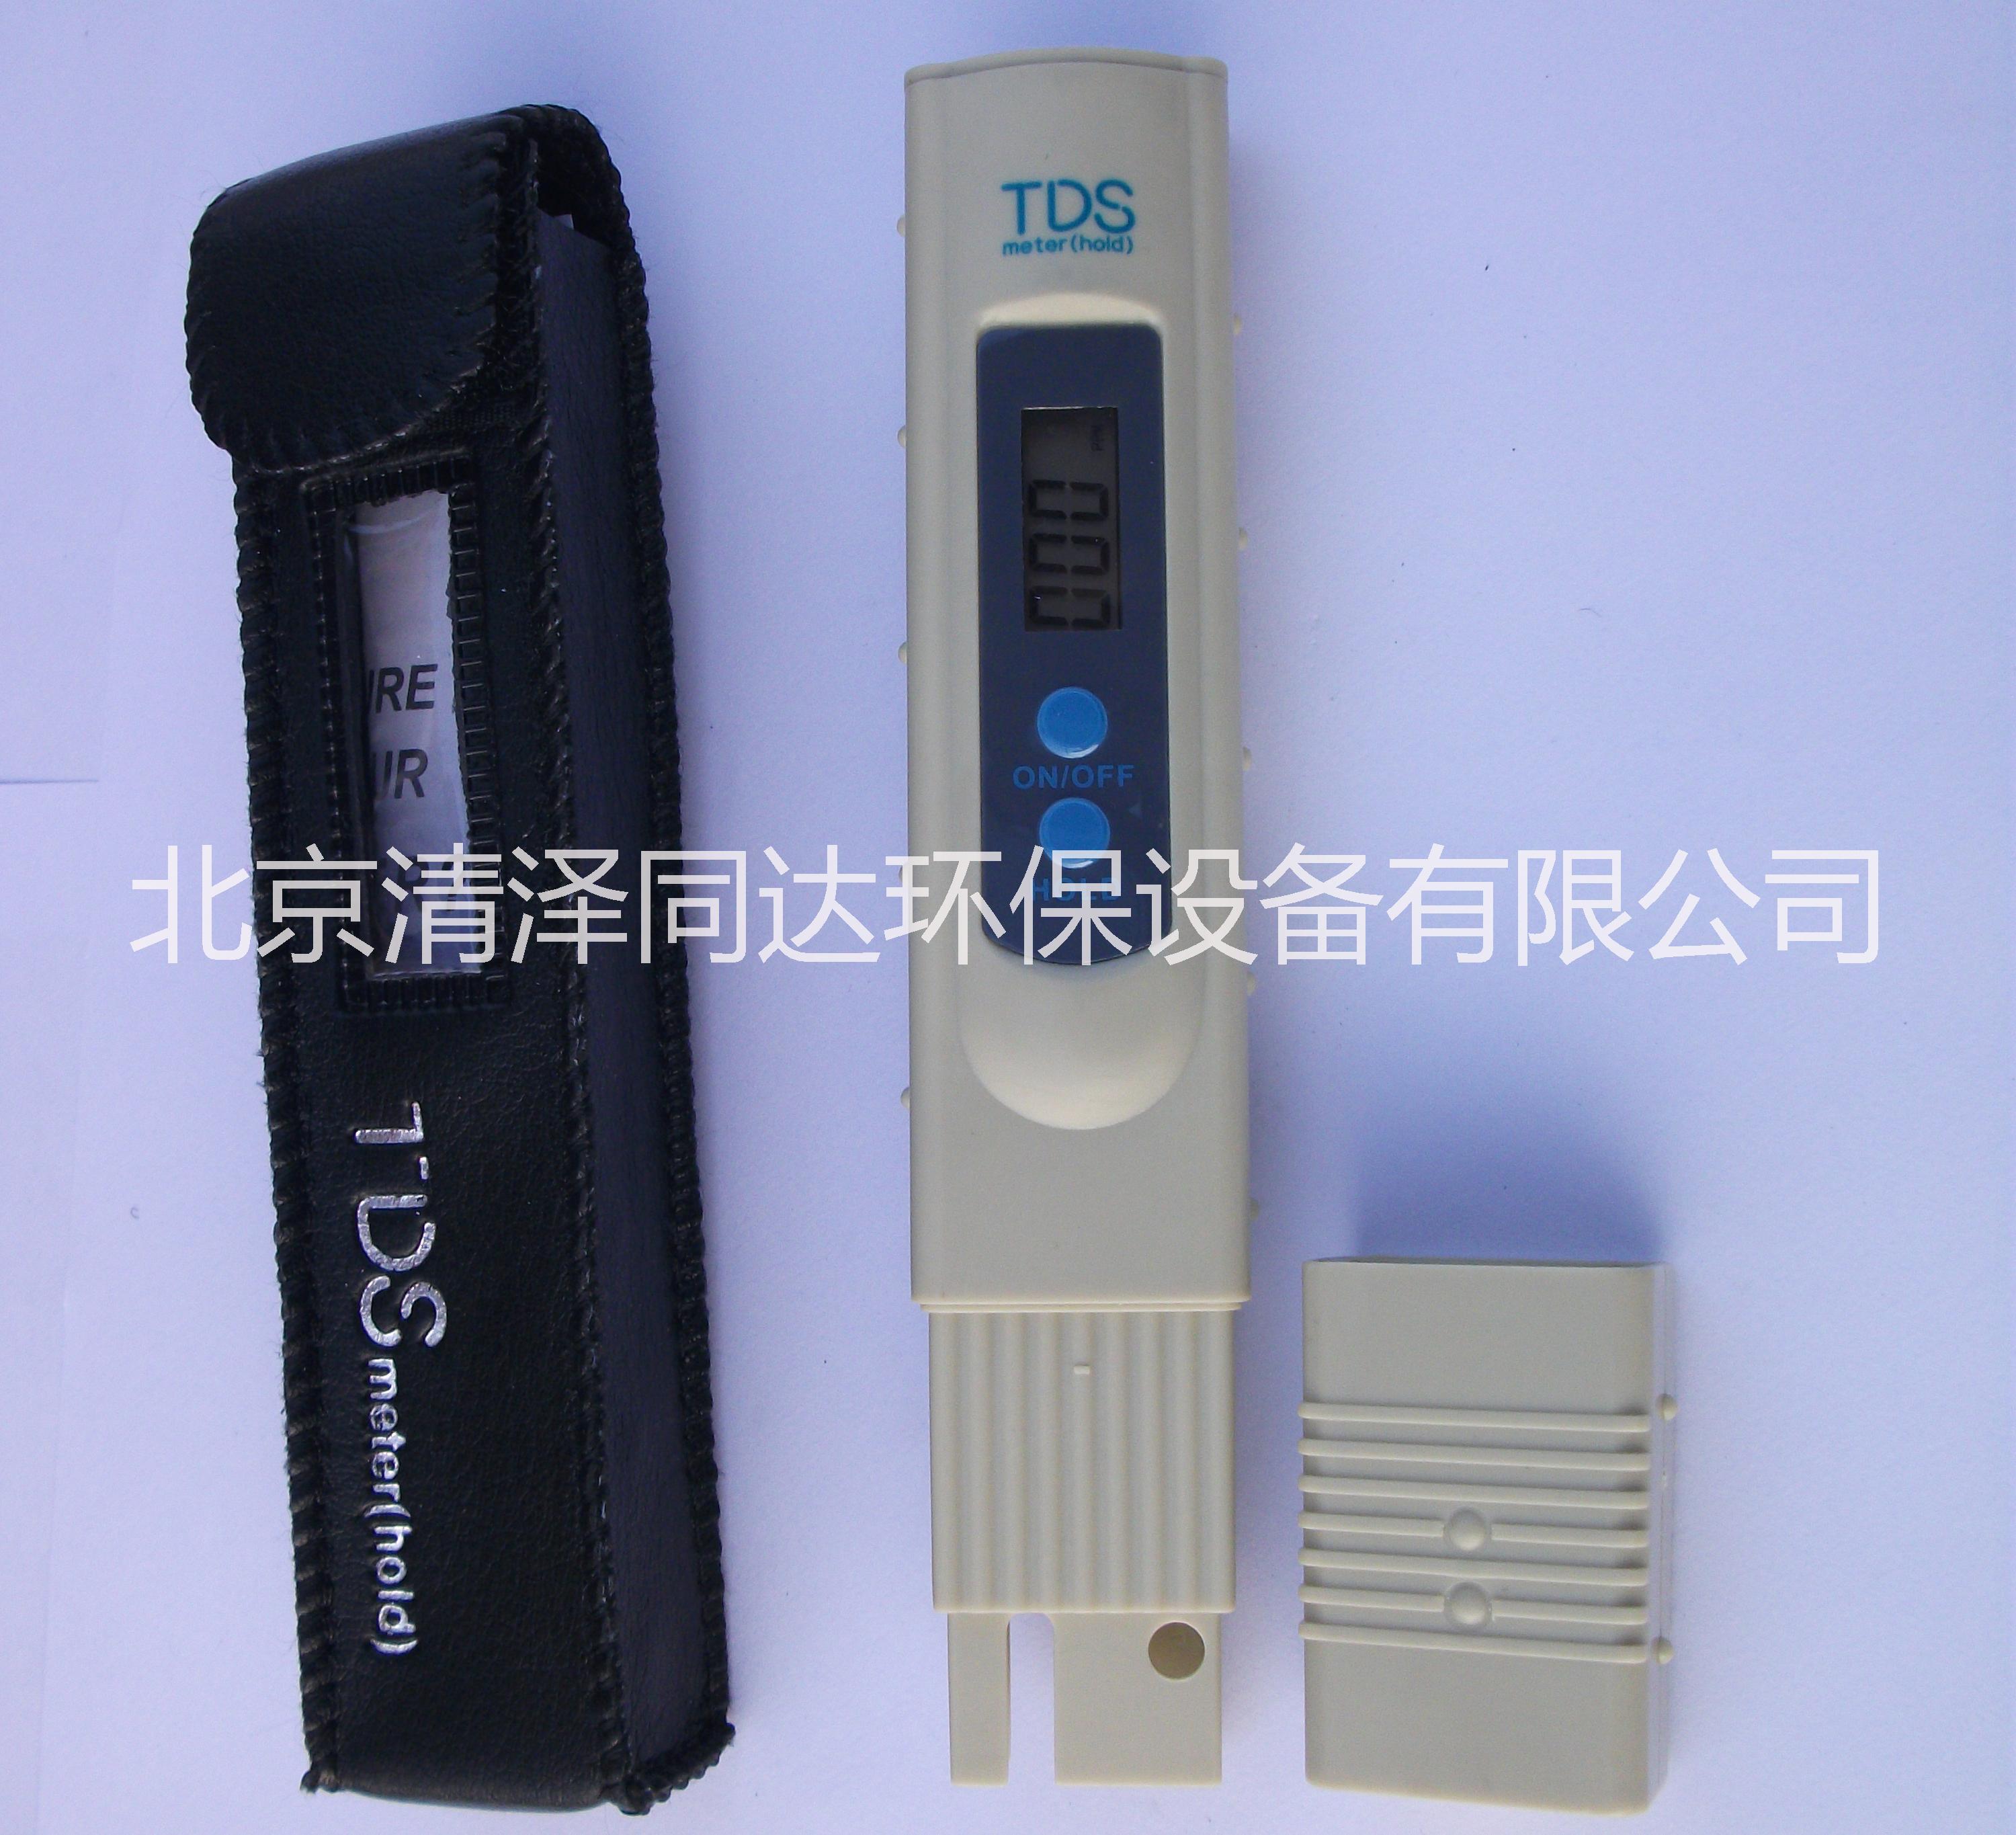 厂家供应水质测量TDS笔-水质测量TDS笔批发-水质测量TDS笔使用方法